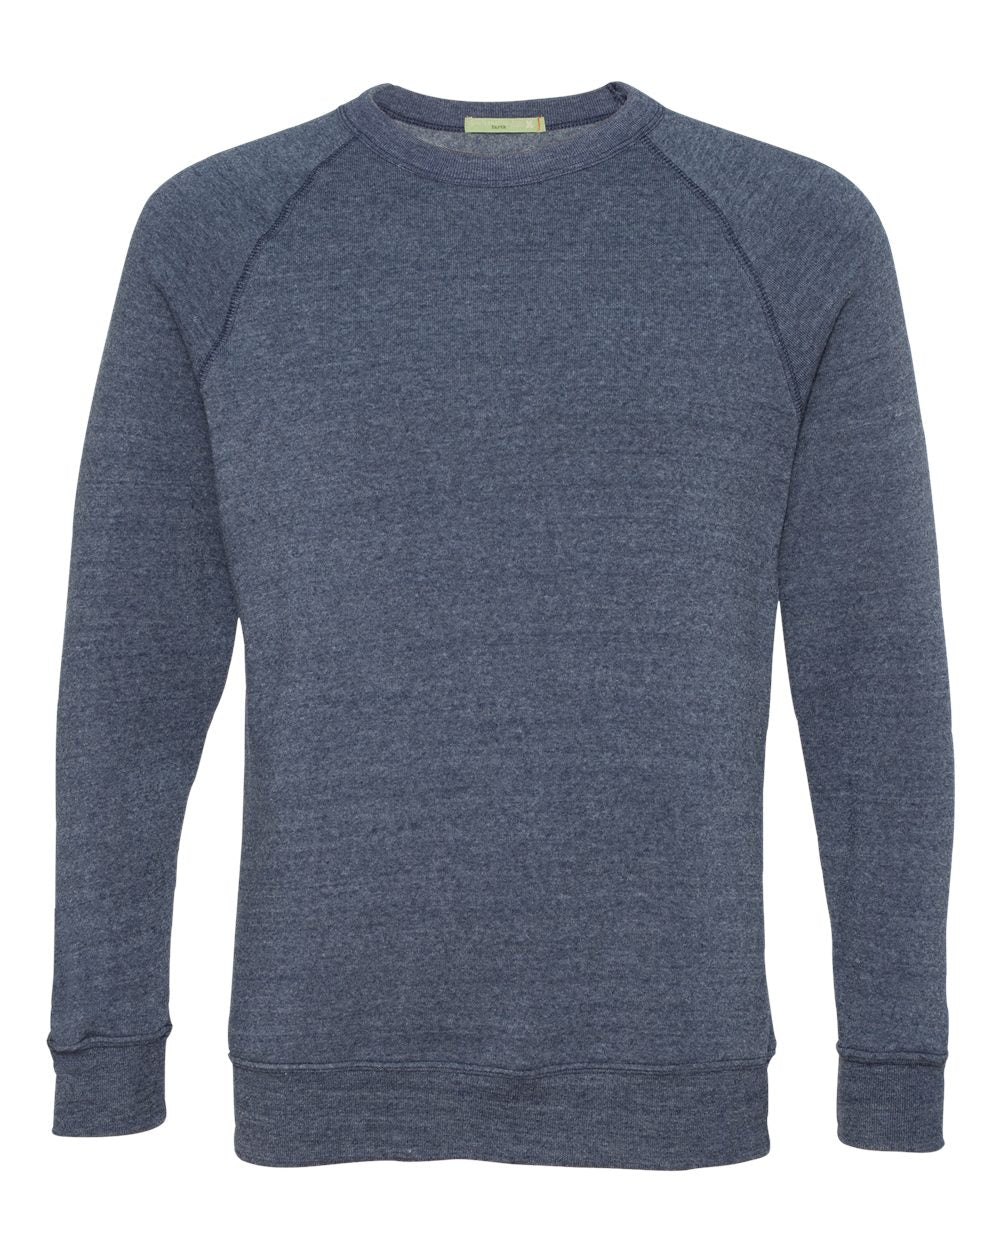 Alternative Champ Eco-Fleece Crewneck Sweatshirt 9575 #color_Eco True Navy